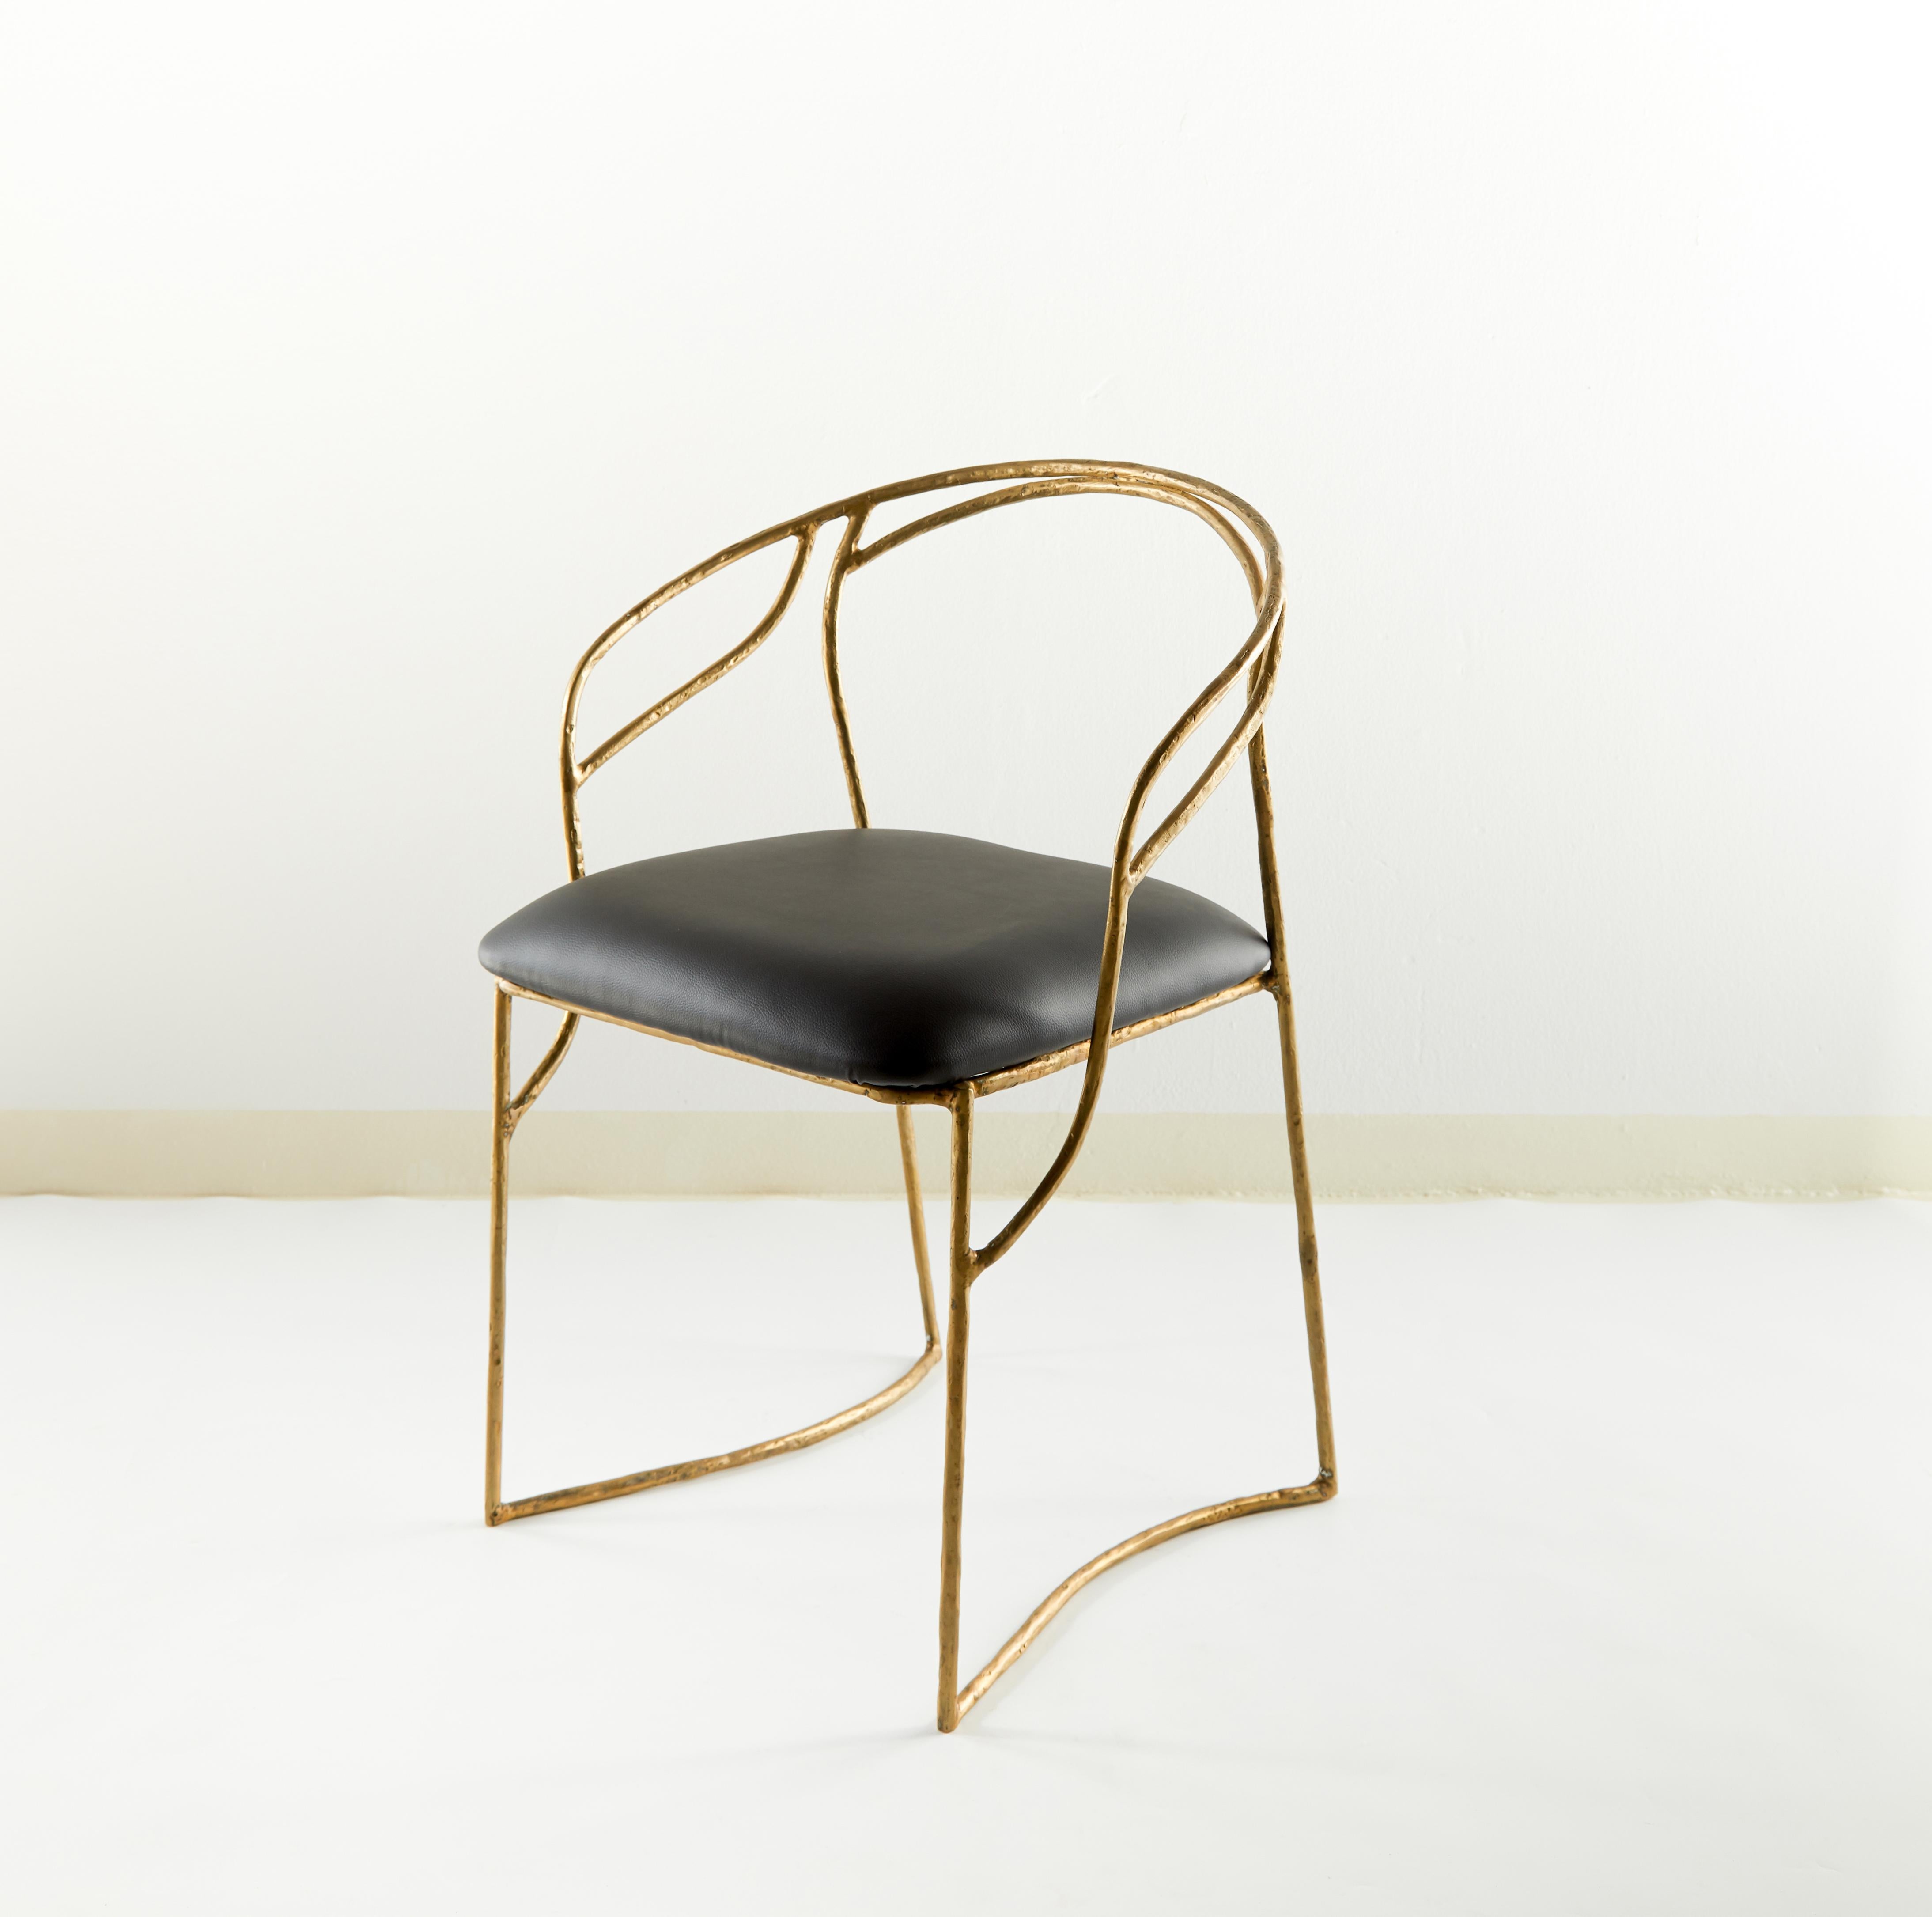 Post-Modern Handsculpted Brass Chair, Masaya For Sale